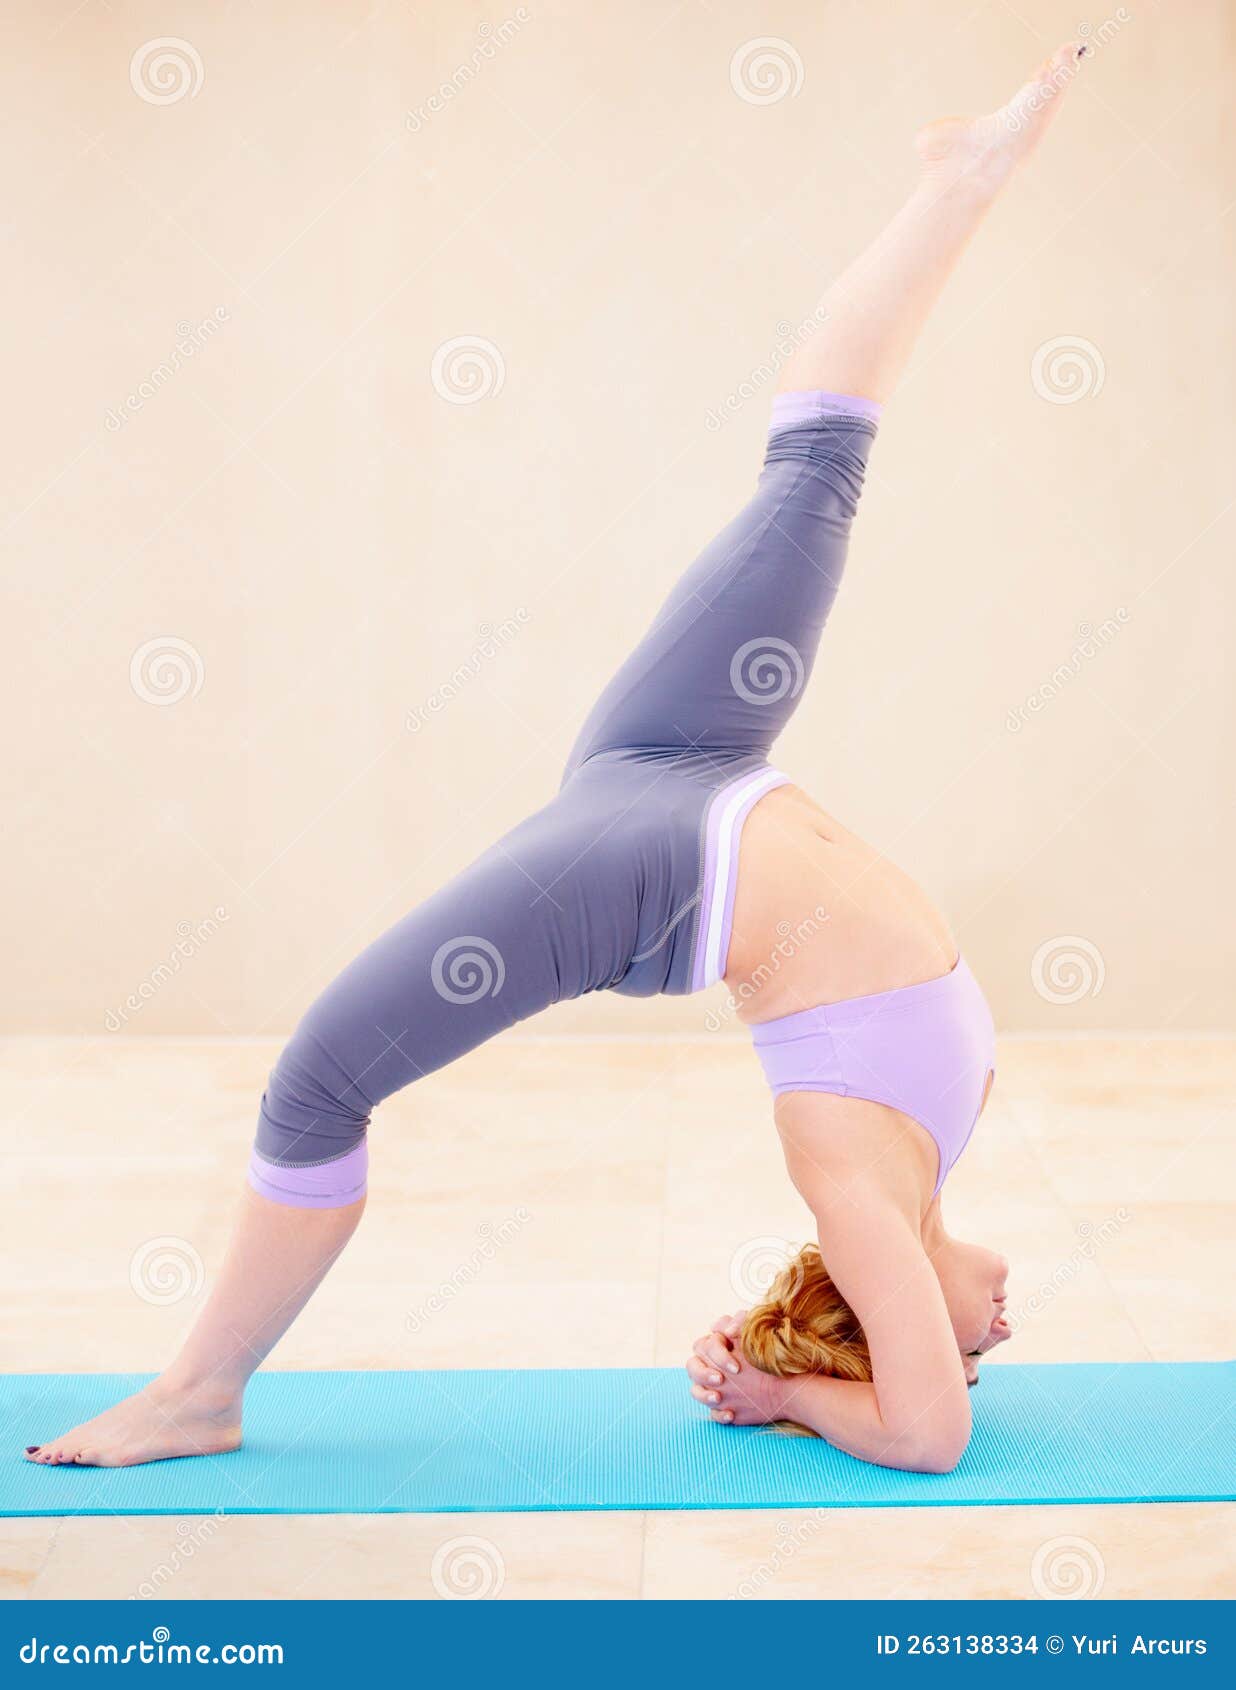 https://thumbs.dreamstime.com/z/chaque-muscle-travaillant-parfaitement-ensemble-femme-flexible-en-position-yoga-faisant-du-toute-seule-263138334.jpg